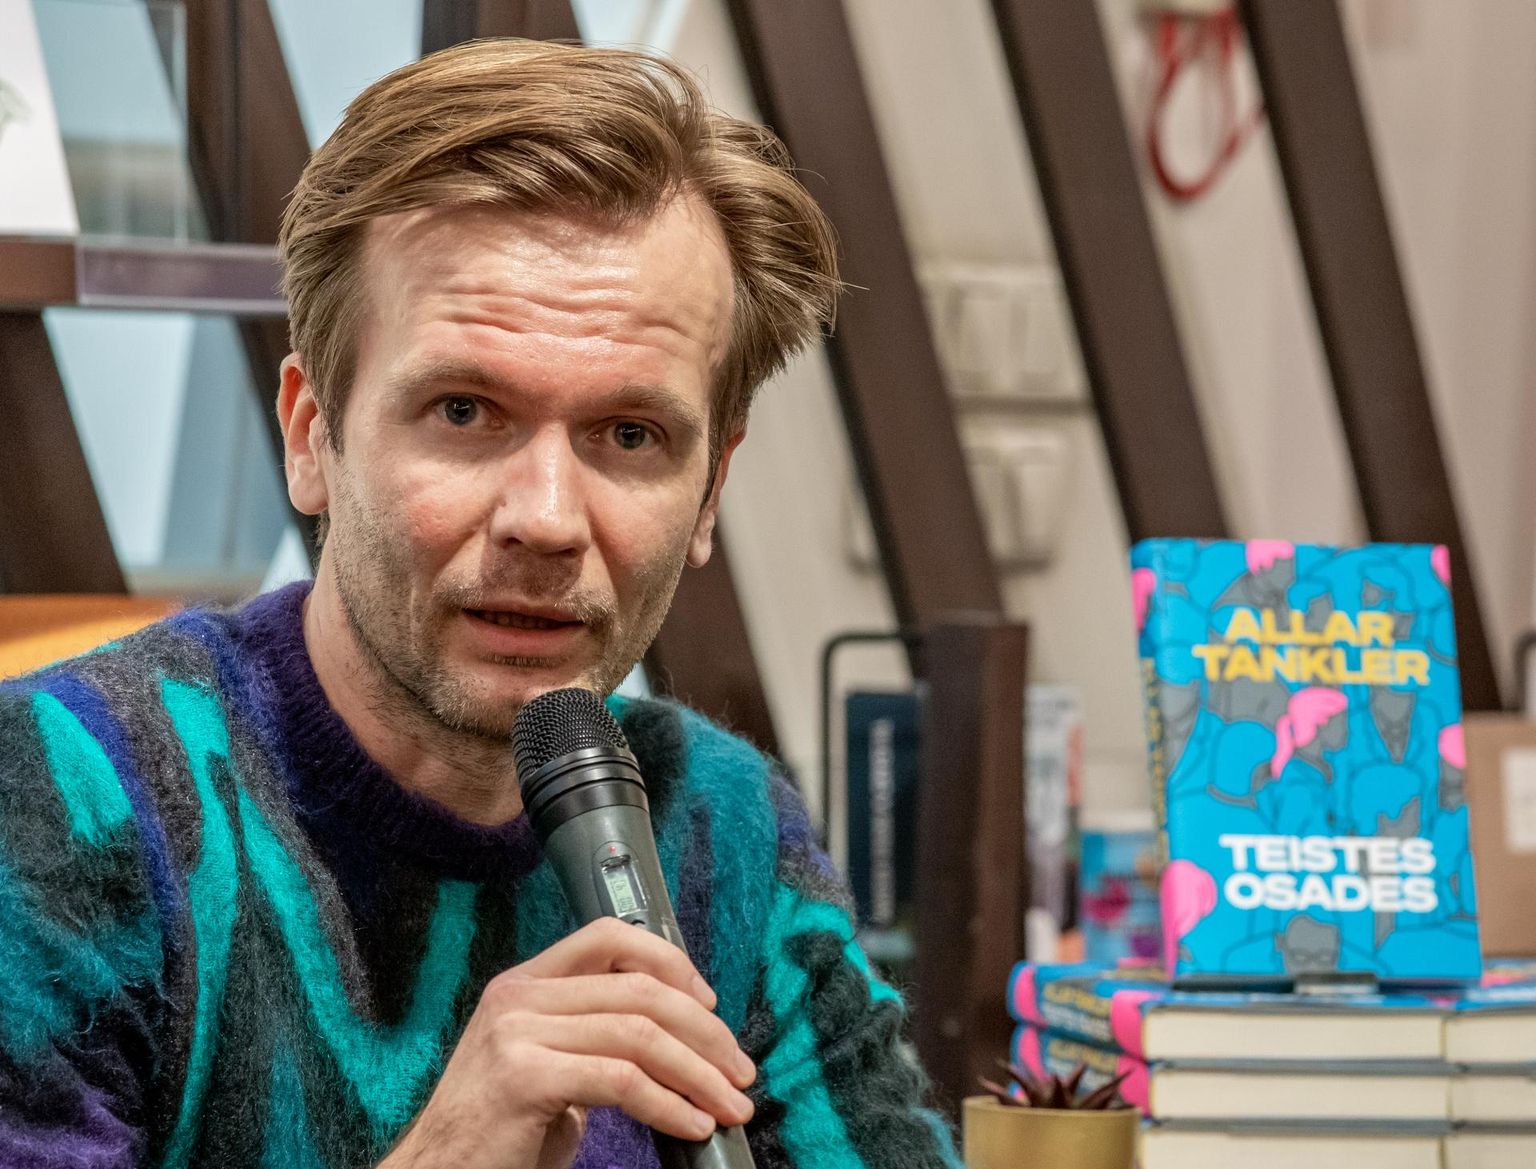 Allar Tankler tänavu jaanuaris oma romaani «Teistes osades» esitlusel Pärnus.